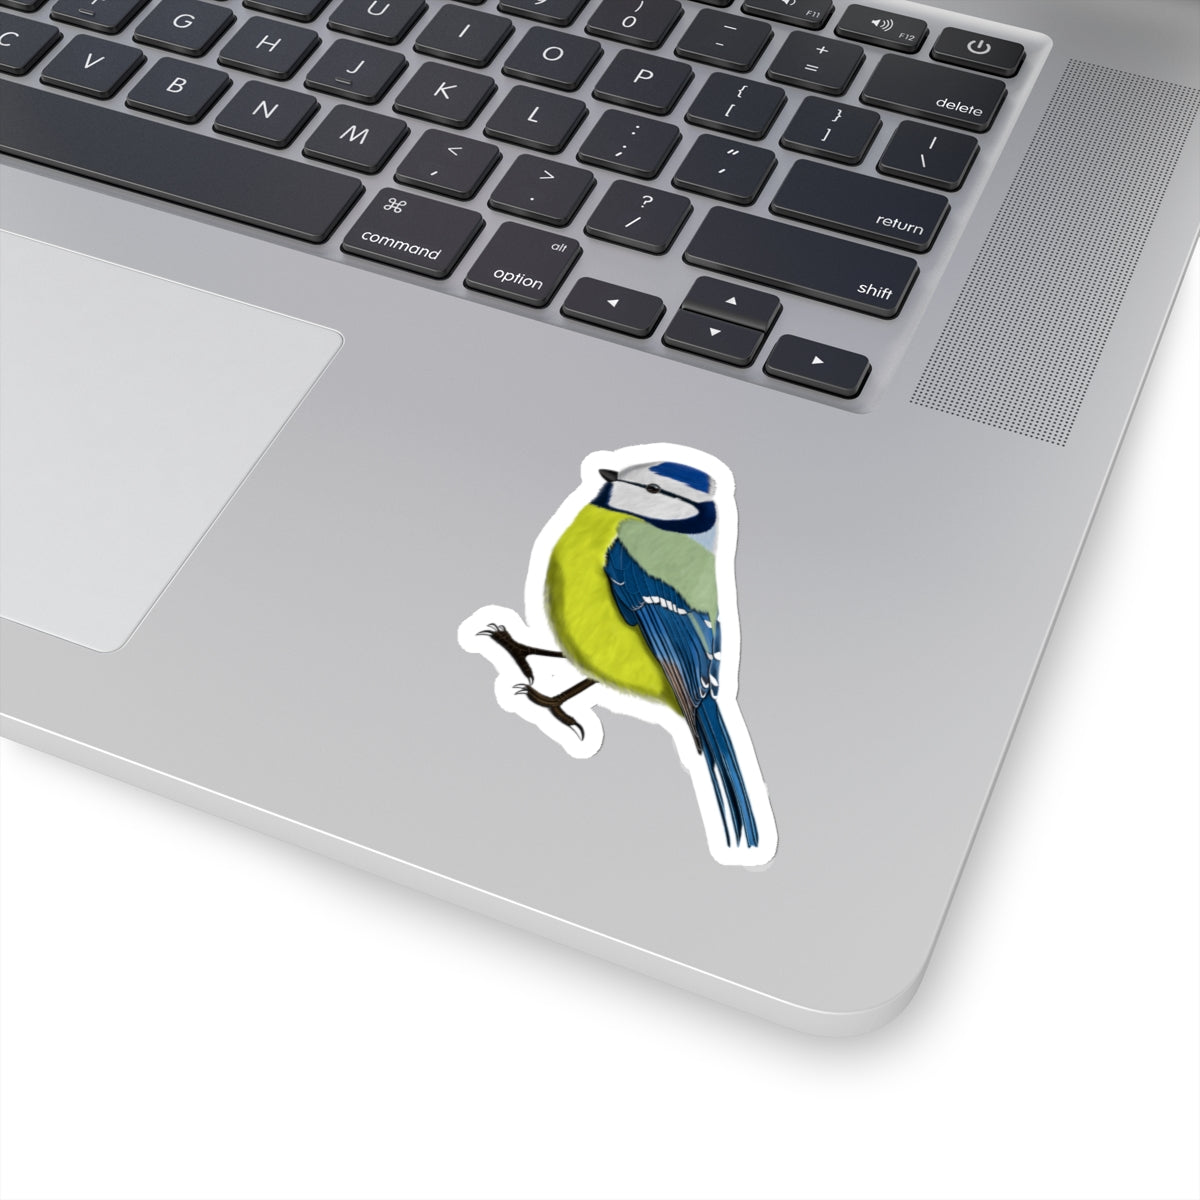 Blue Titmouse Bird Kiss-Cut Sticker